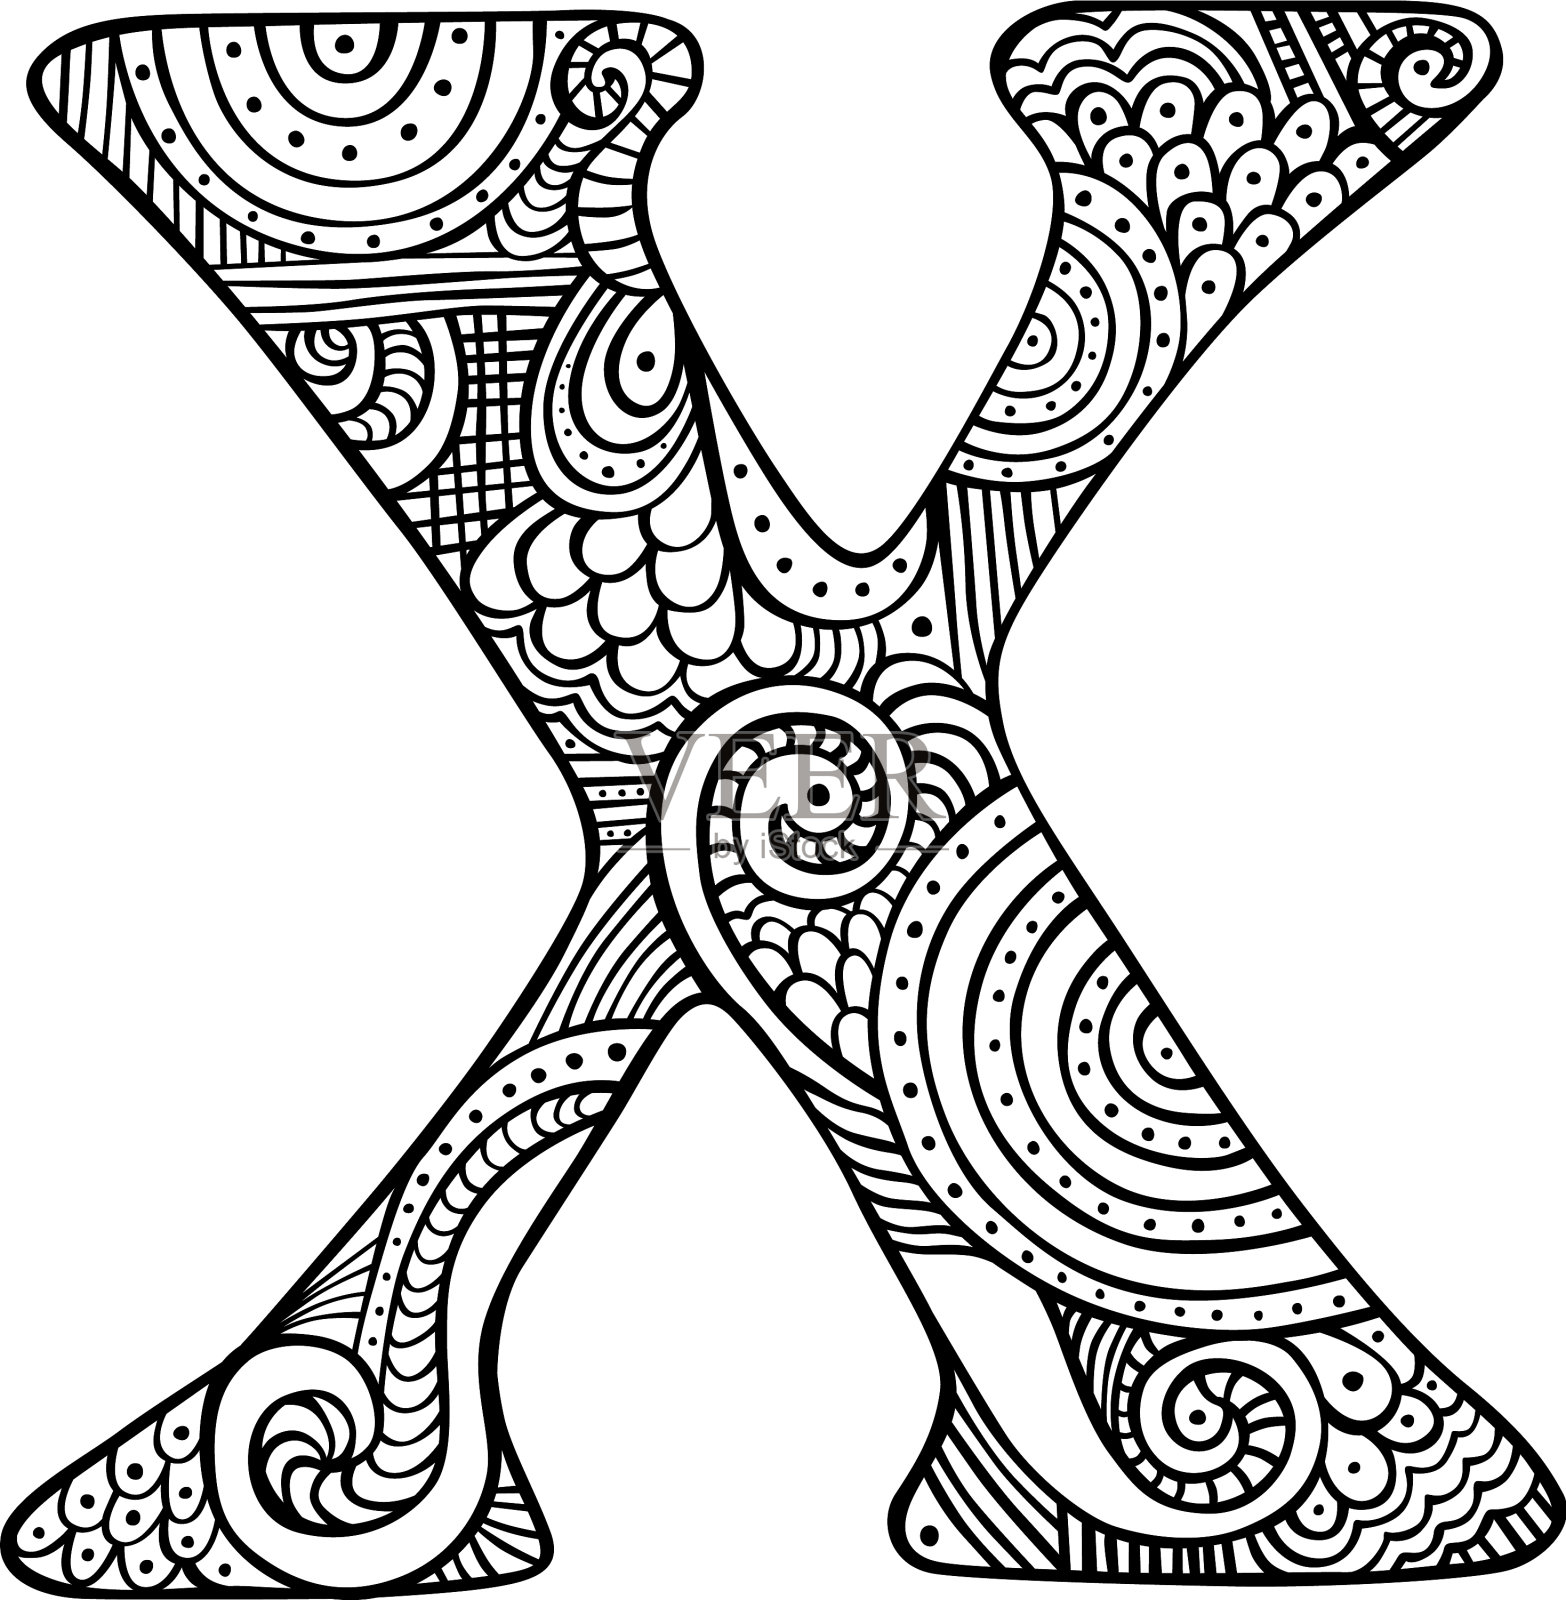 字母x设计元素图片